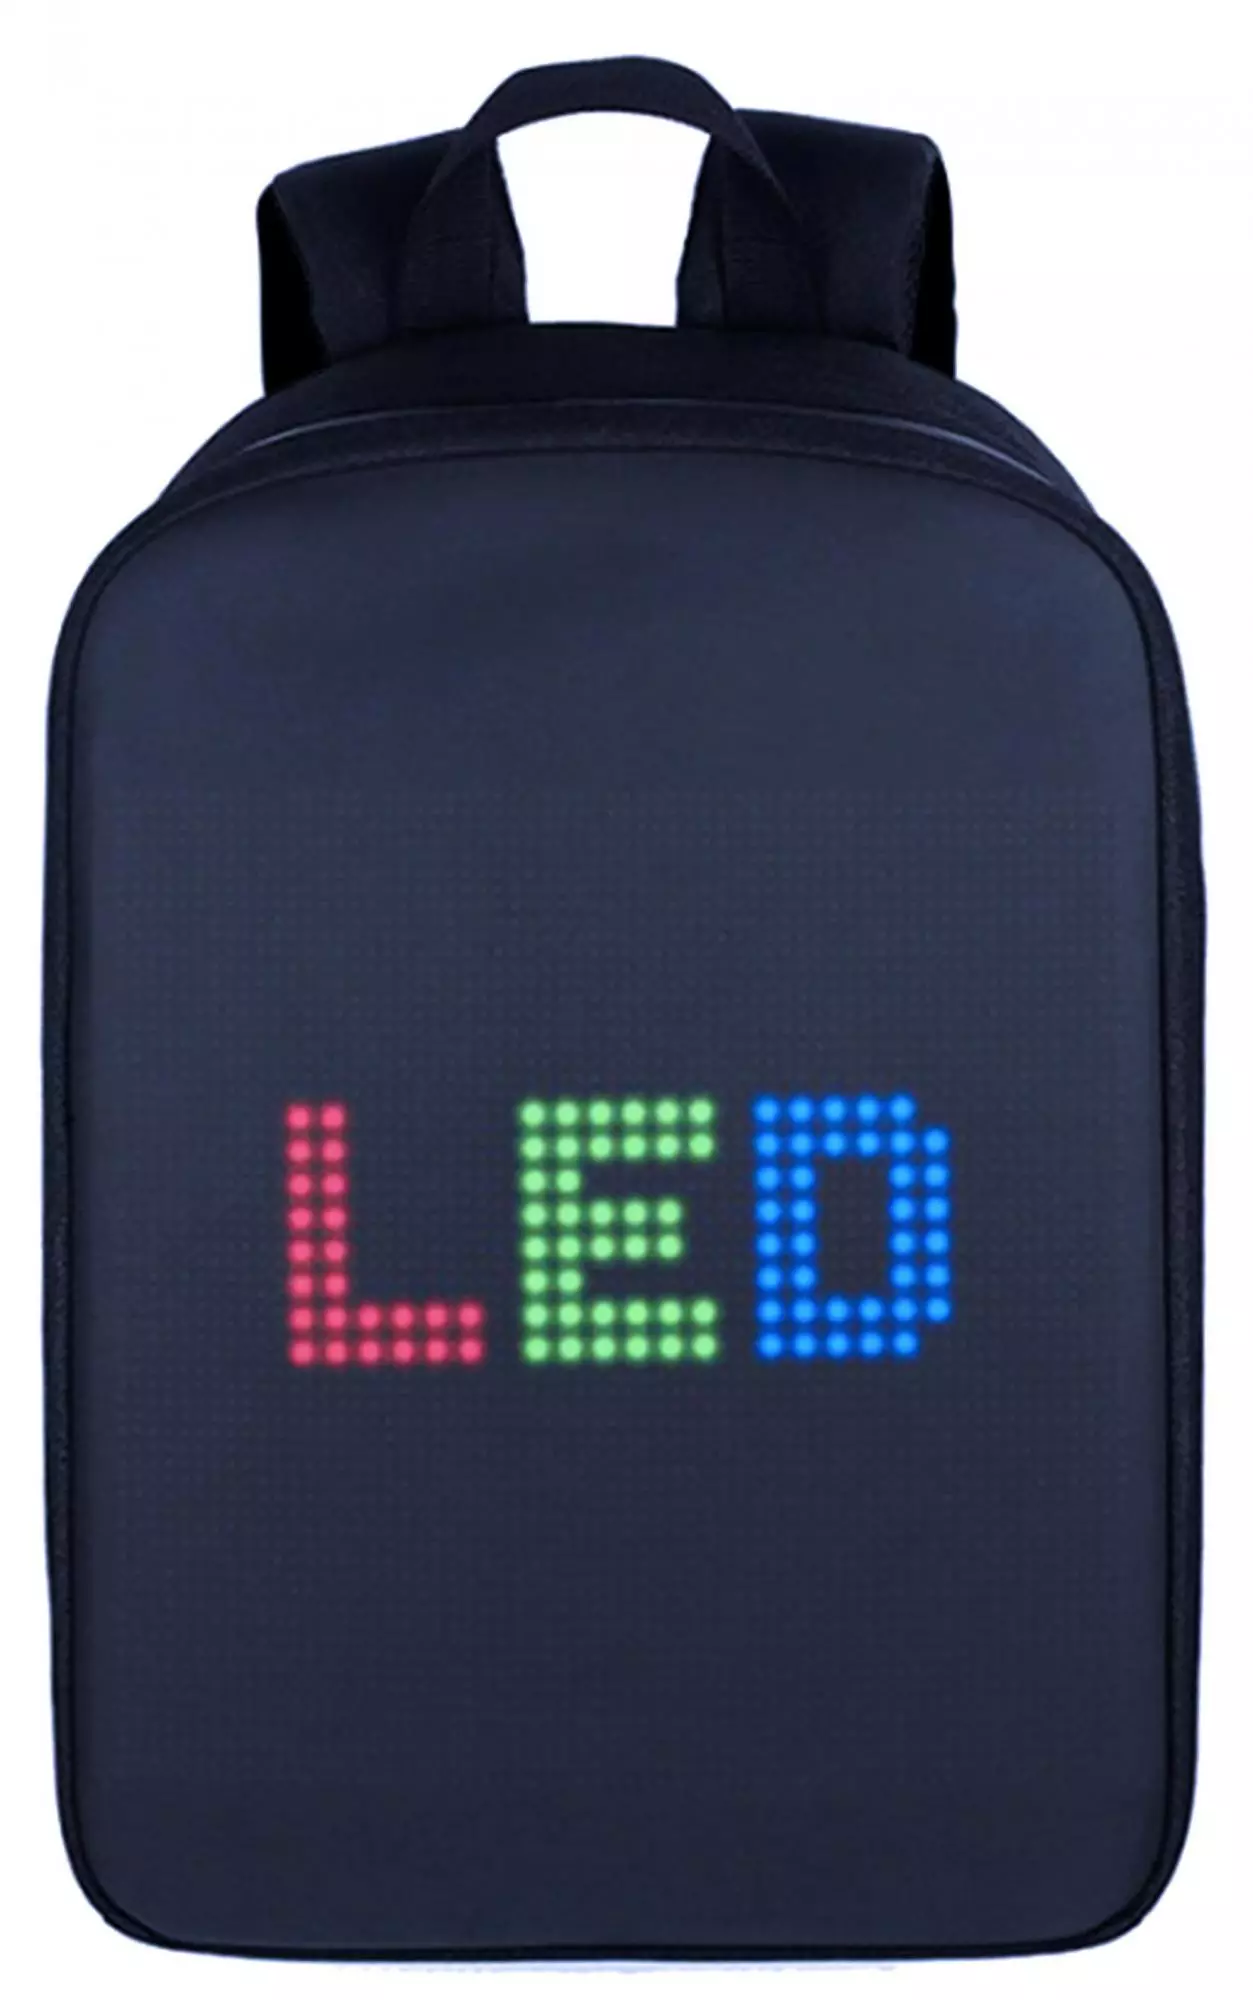 Skærm Rygsække: Oversigt over lysende digitale rygsække med LED Display bagfra. Sådan forbinder du den 